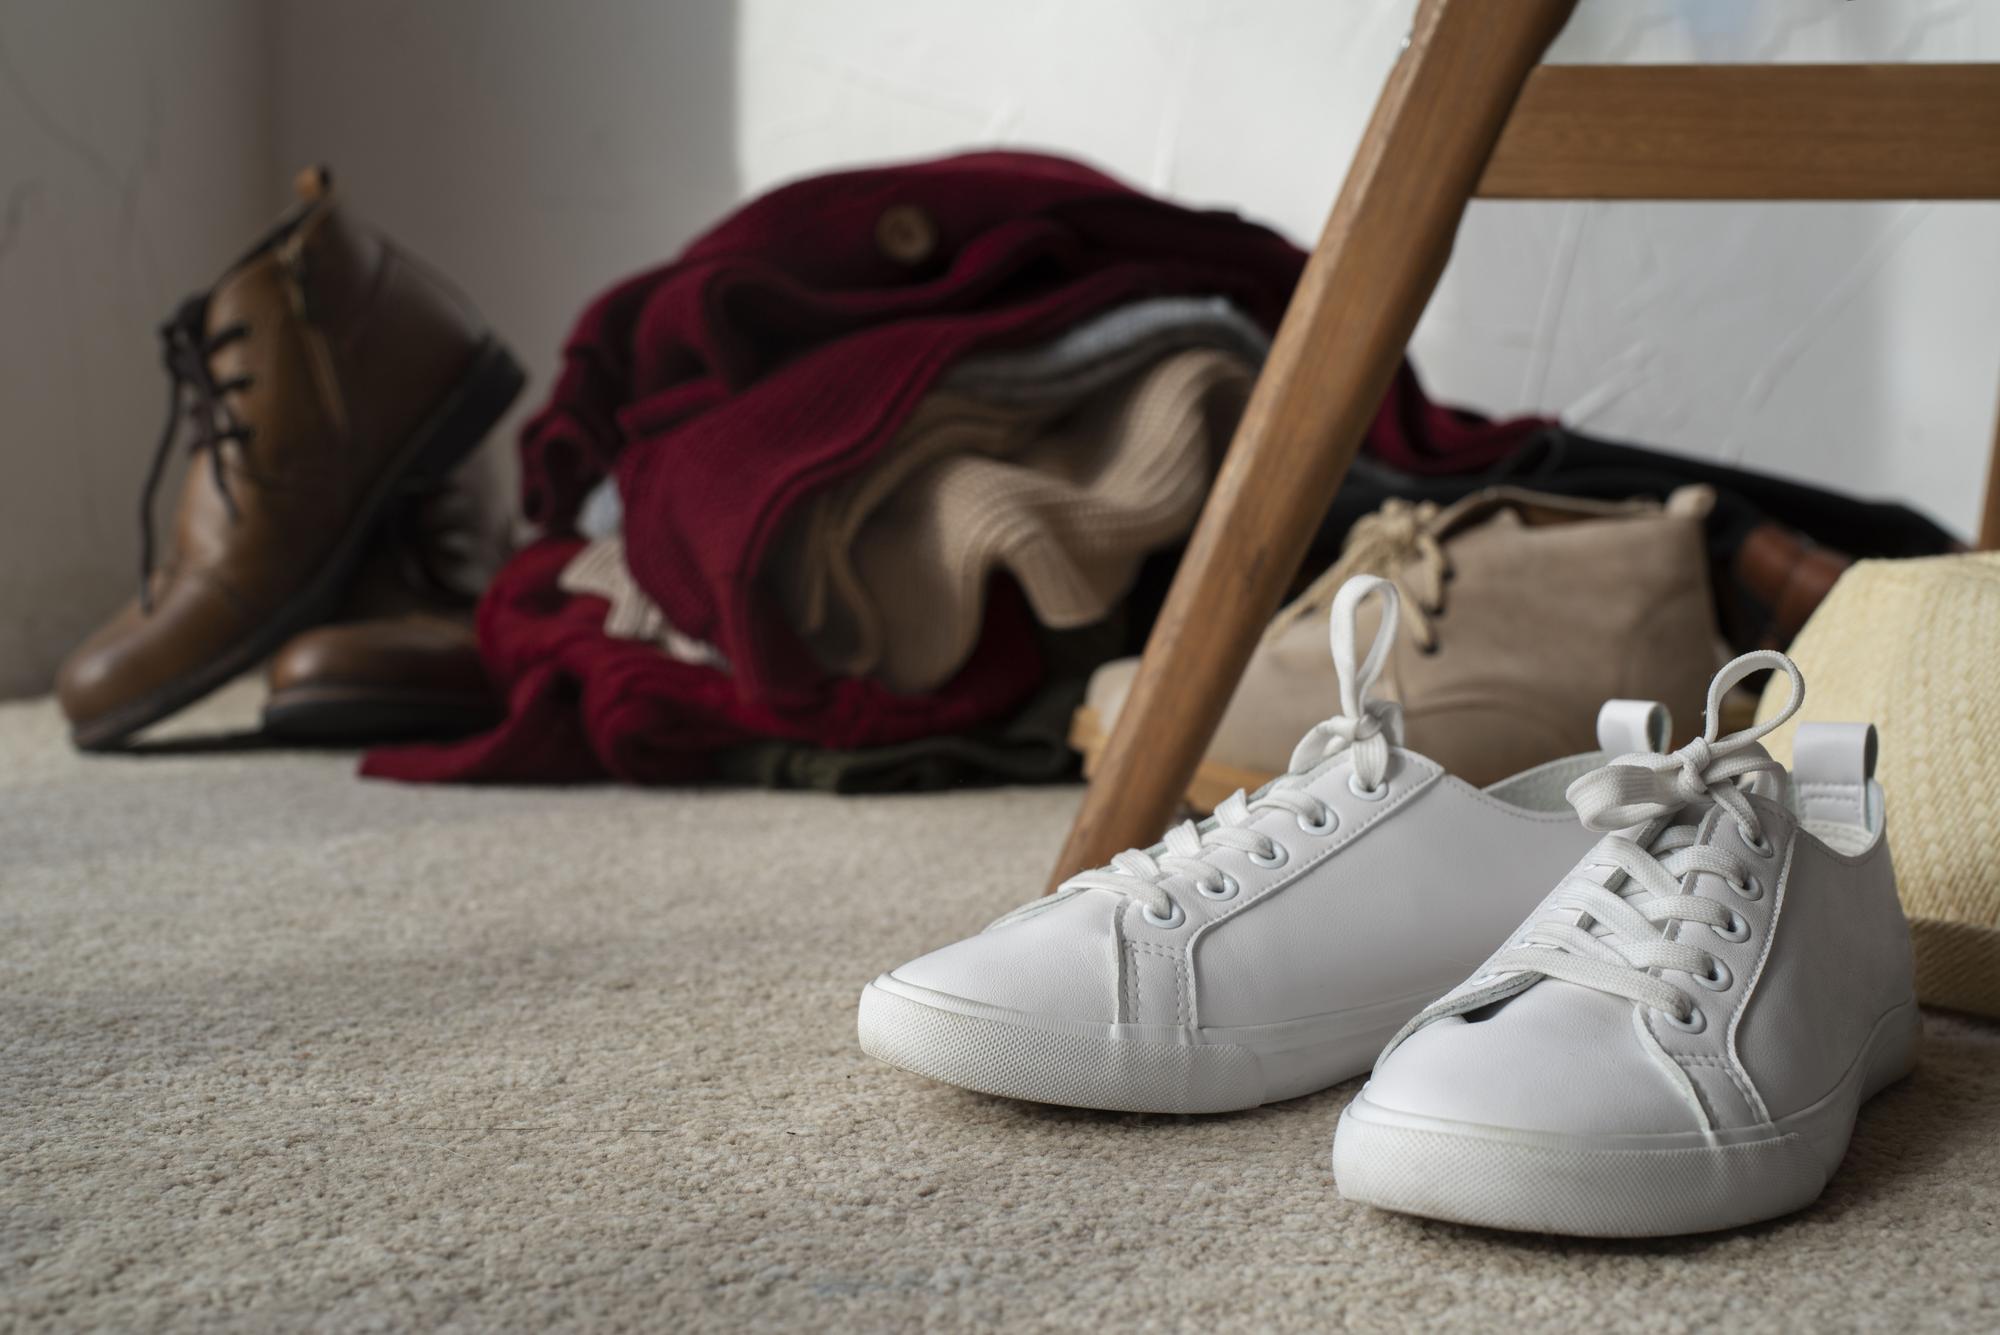 TRUCOS ZAPATILLAS | Este es el truco para limpiar tus zapatillas blancas y  que parezcan nuevas